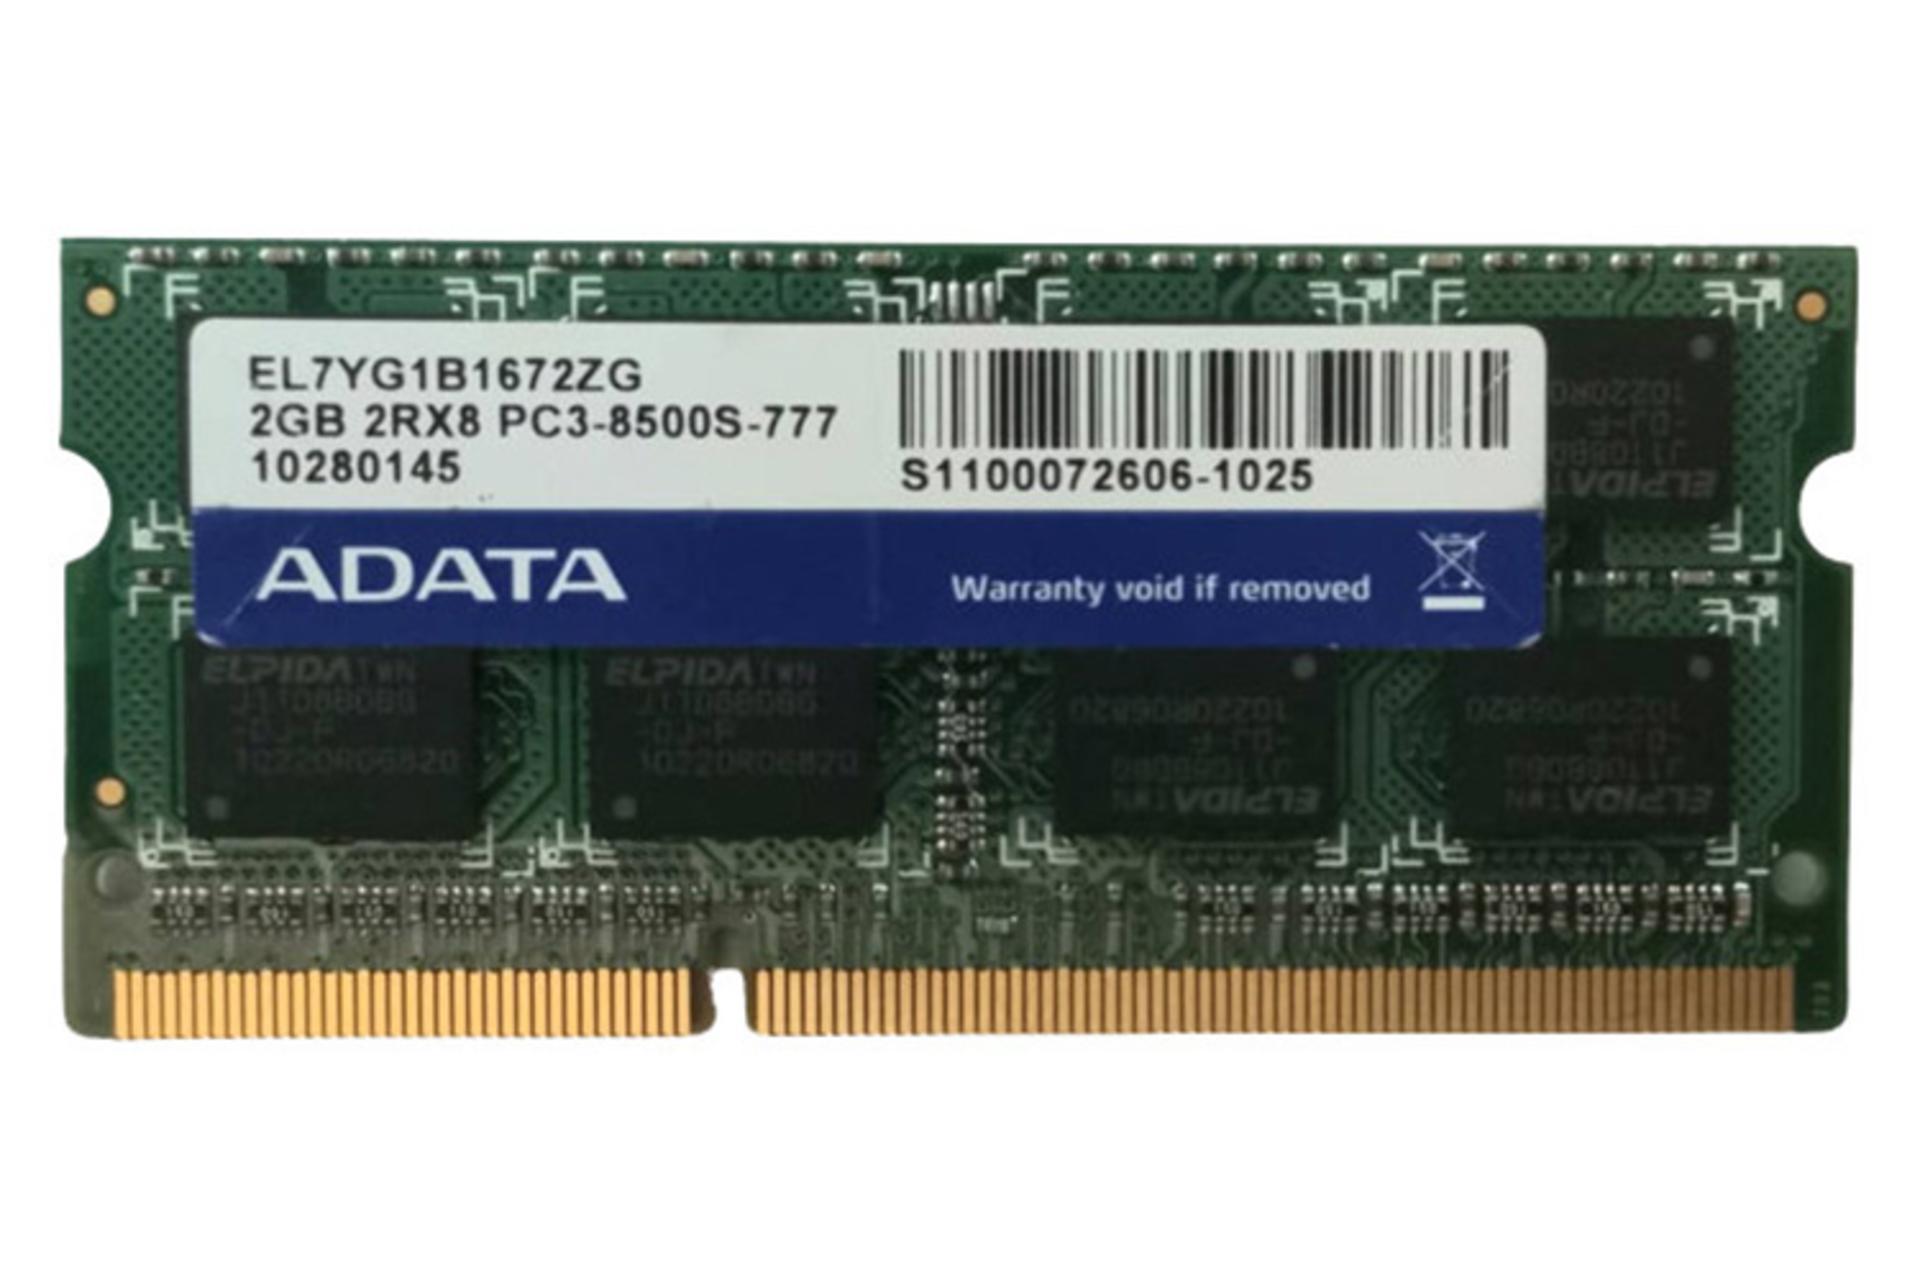 رم ای دیتا ADATA EL7YG1B1672ZG 2GB DDR3-1066 CL7